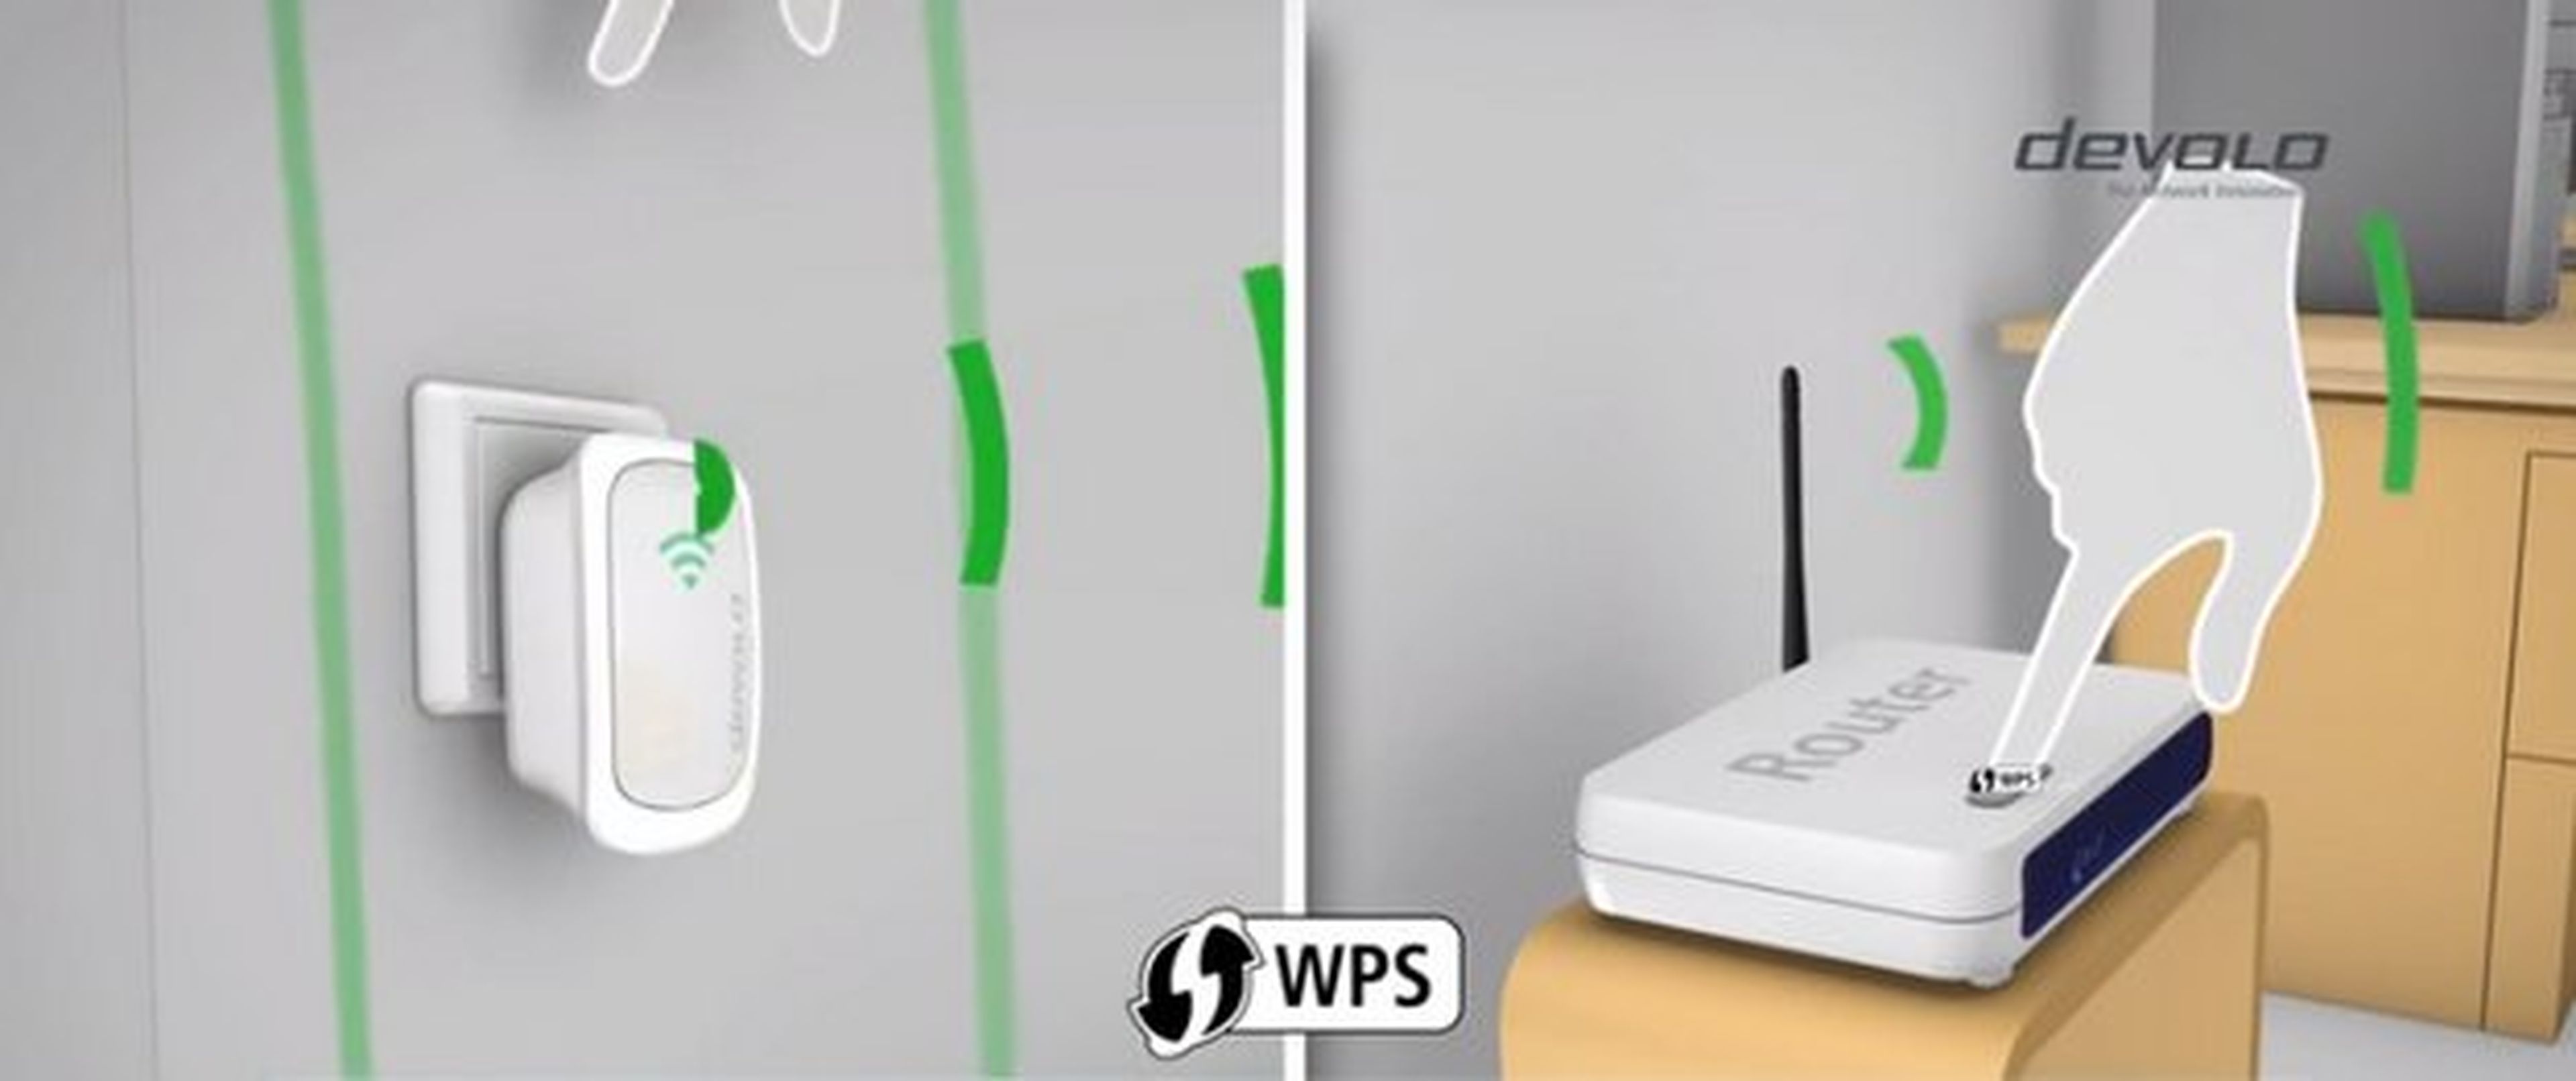 Cómo funciona un extensor WiFi y por qué es tan importante que compres uno